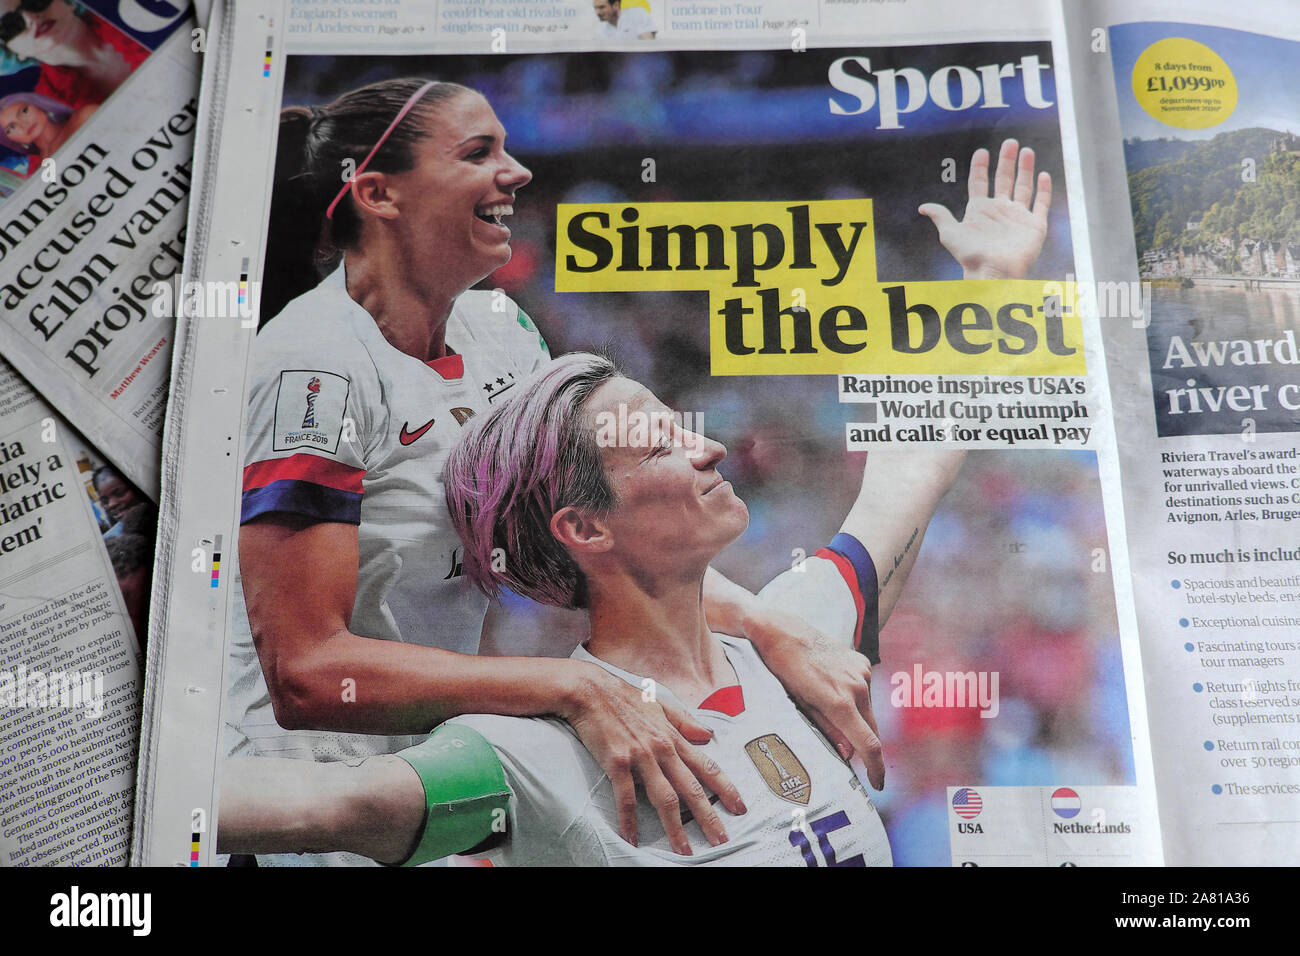 Ganadores de la Copa Mundial de Fútbol femenino de los Estados Unidos en Lyon Francia Morgan y Rapinoe celebran su victoria en la sección Sport del periódico Guardian Londres, Reino Unido Foto de stock